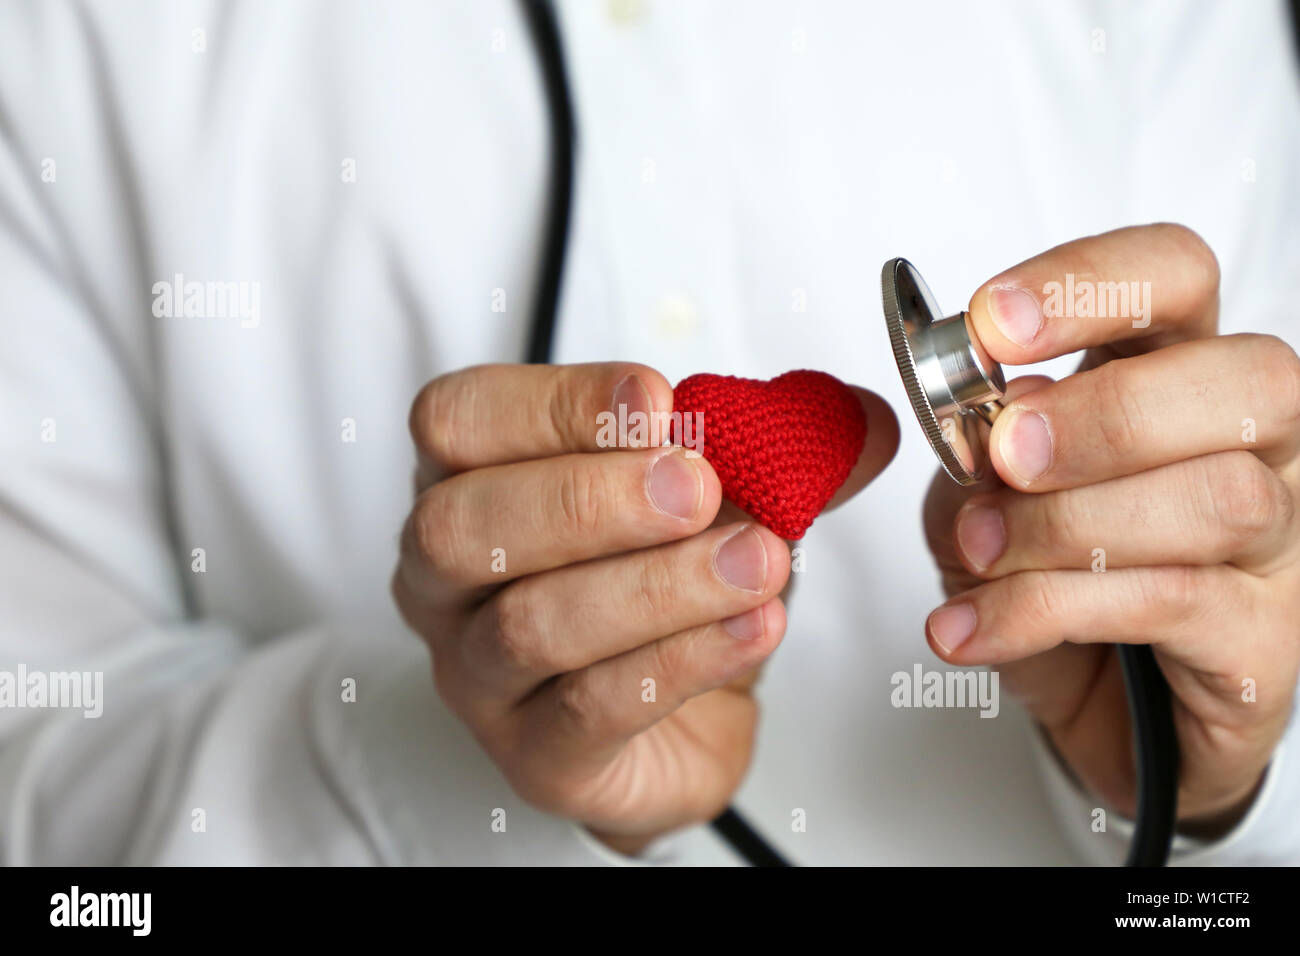 Doctor with stethoscope et rouge coeur tricoté à la main. Concept de cardiologue, maladies de coeur, le diagnostic, la pression artérielle, examen médical Banque D'Images